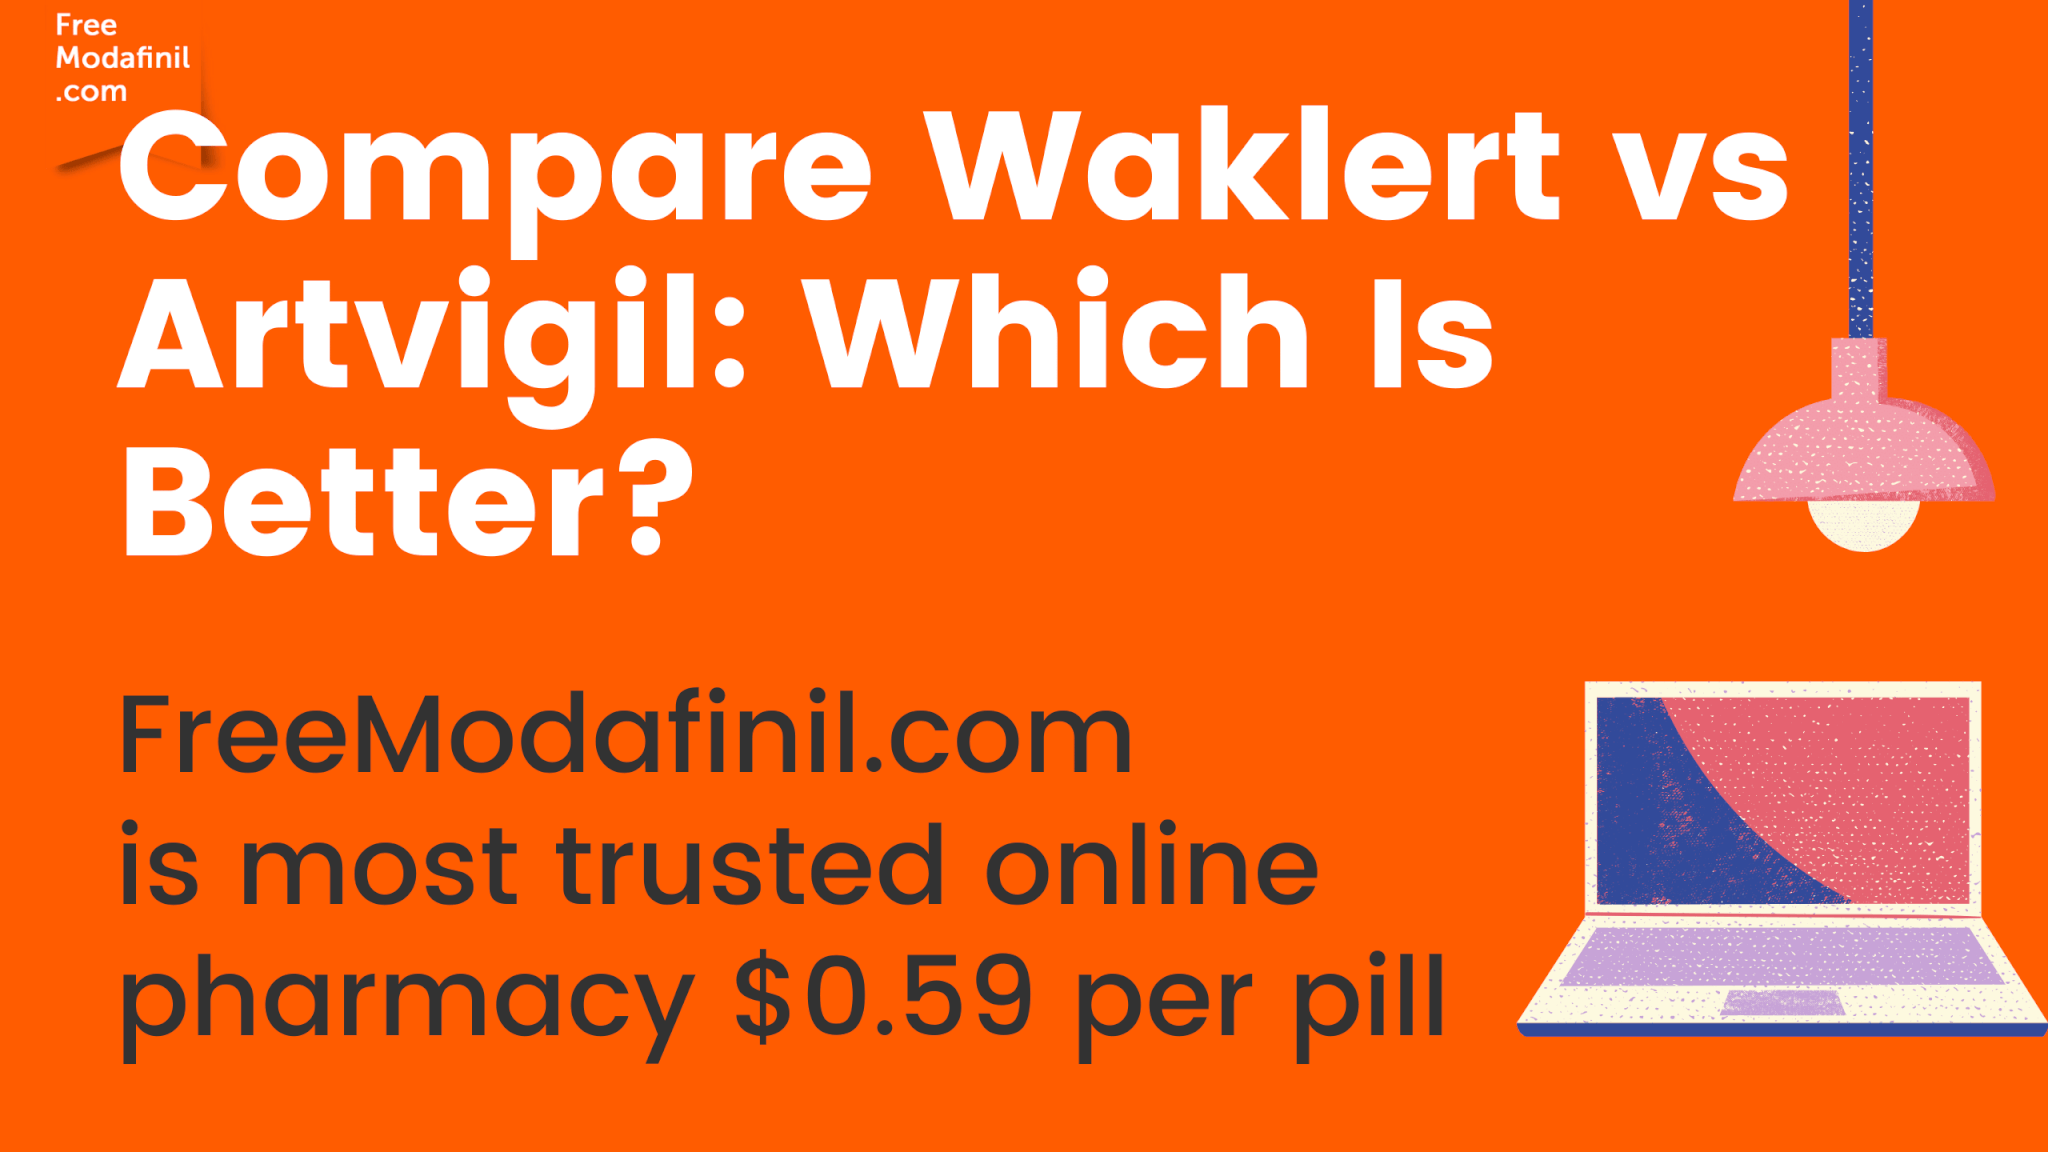 Compare Waklert vs Artvigil: Which Is Better